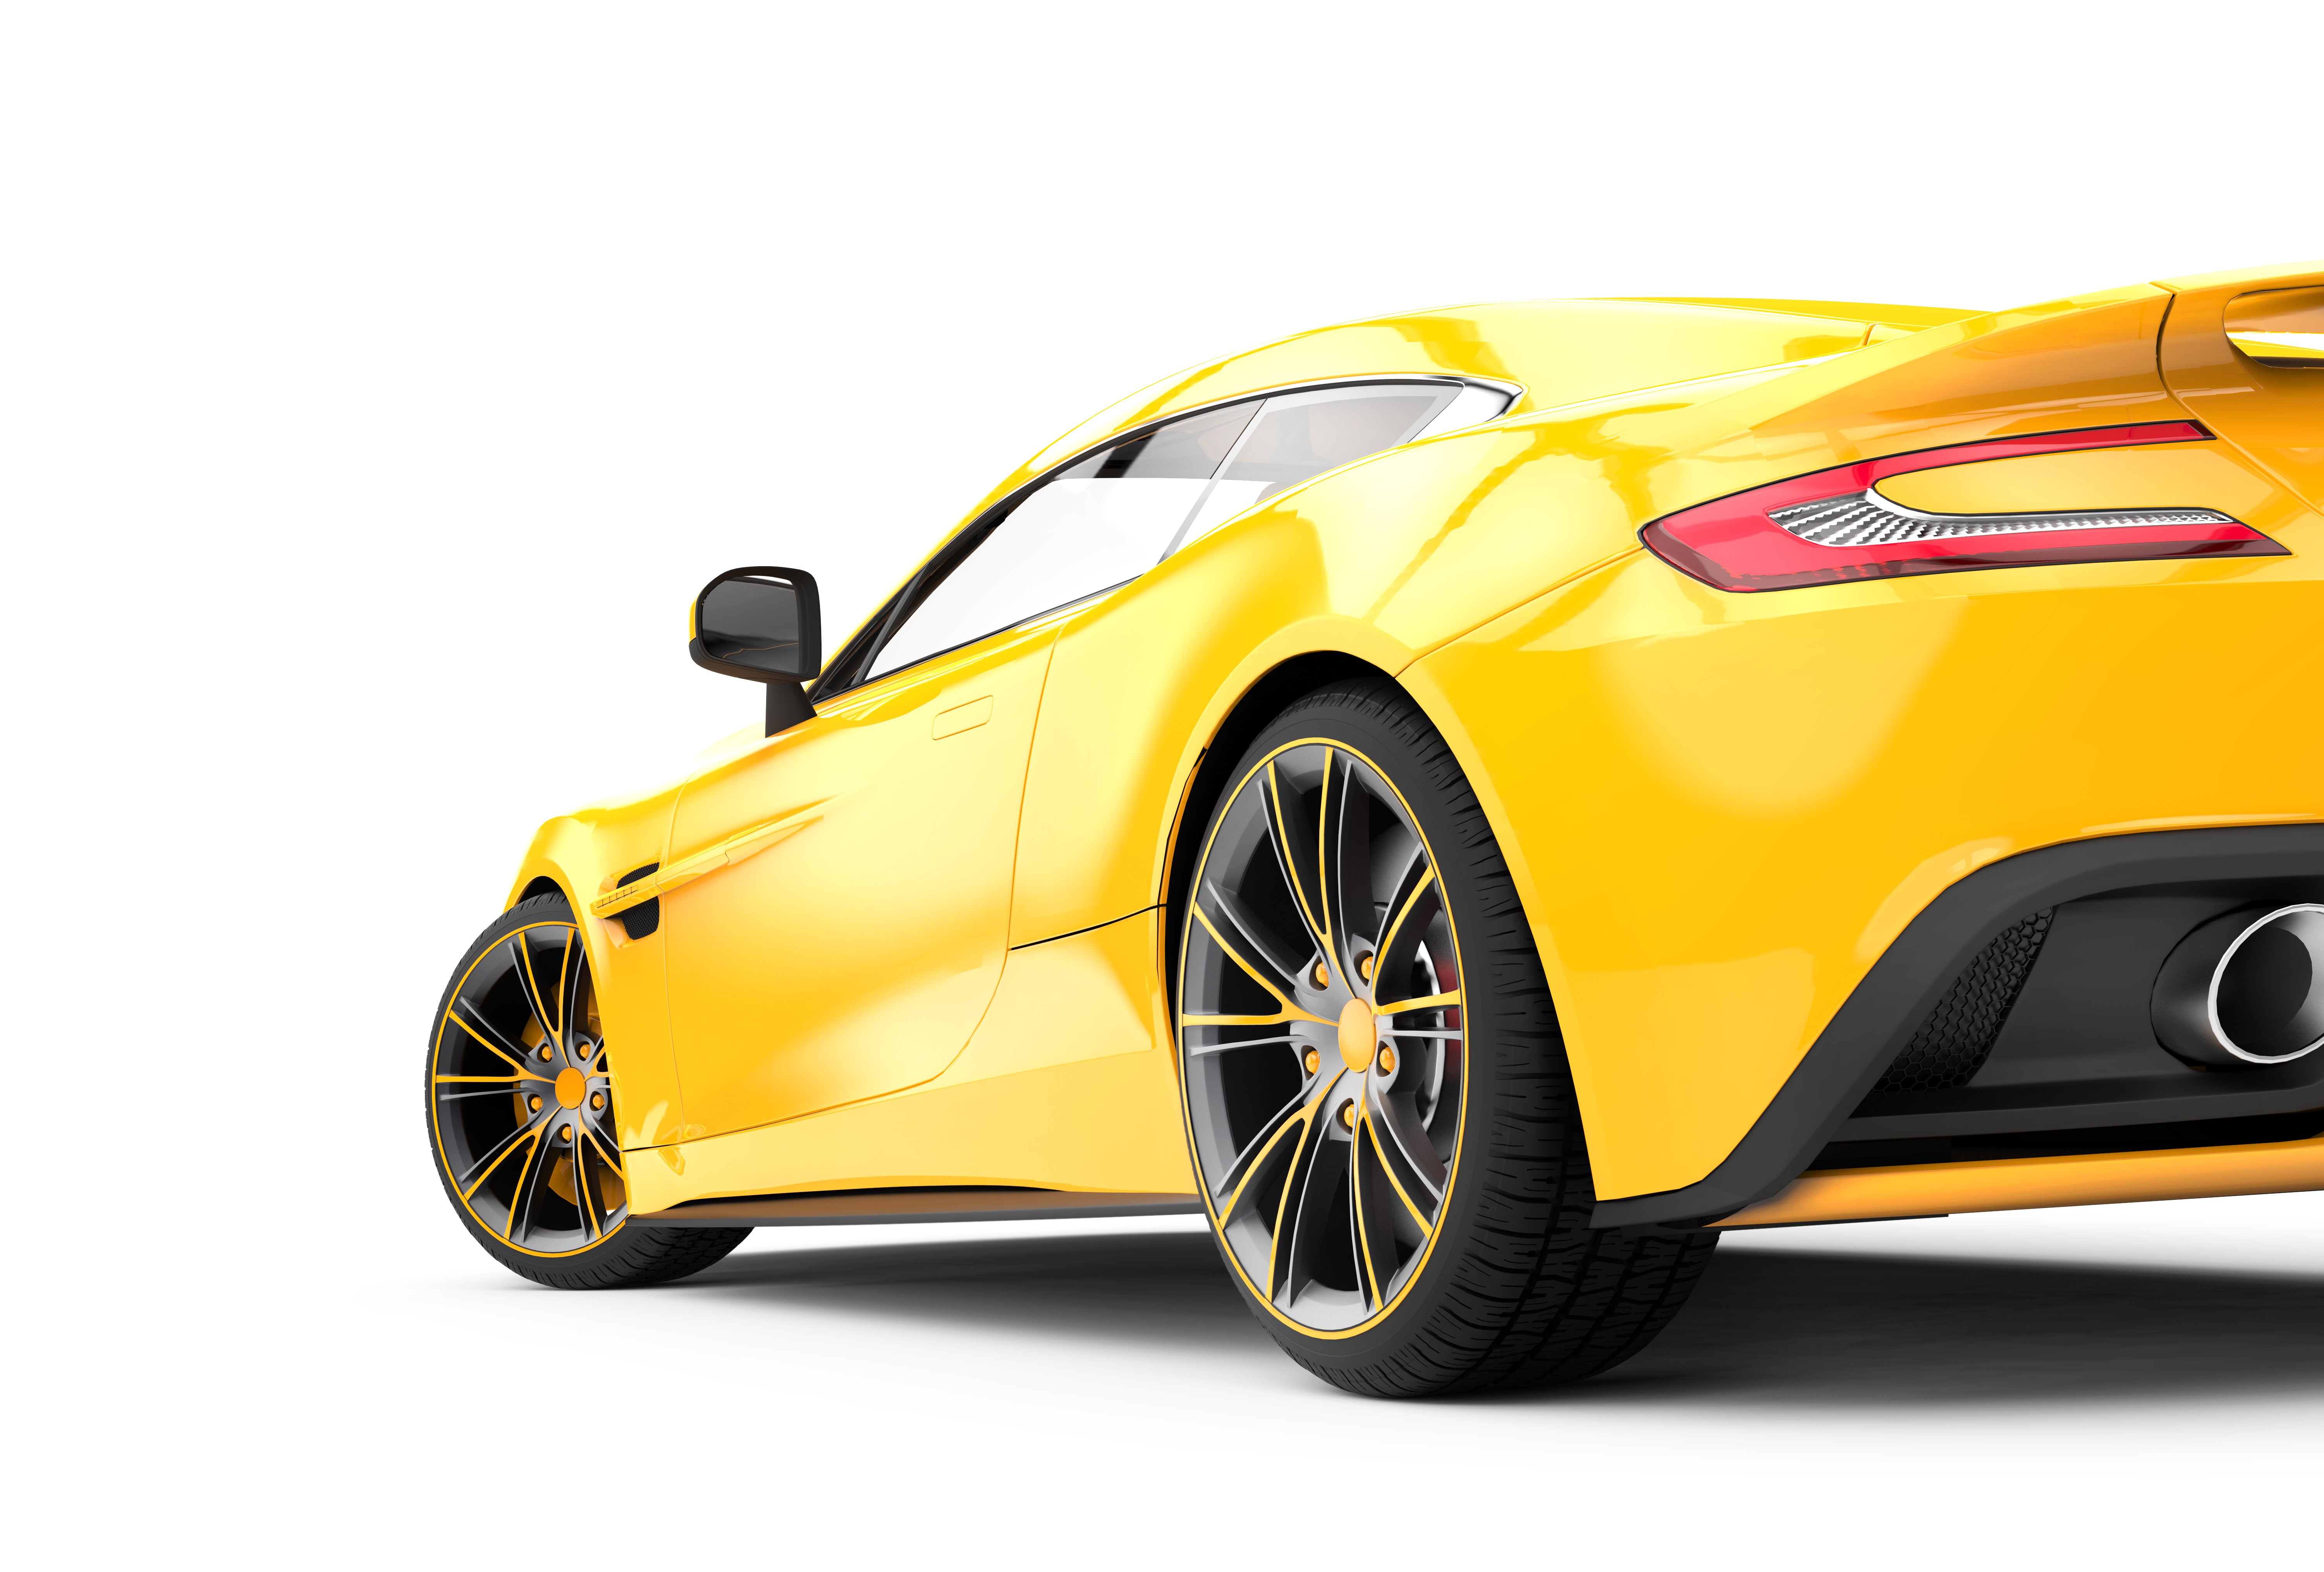 A luxurious yellow sportscar | Photo: Shutterstock